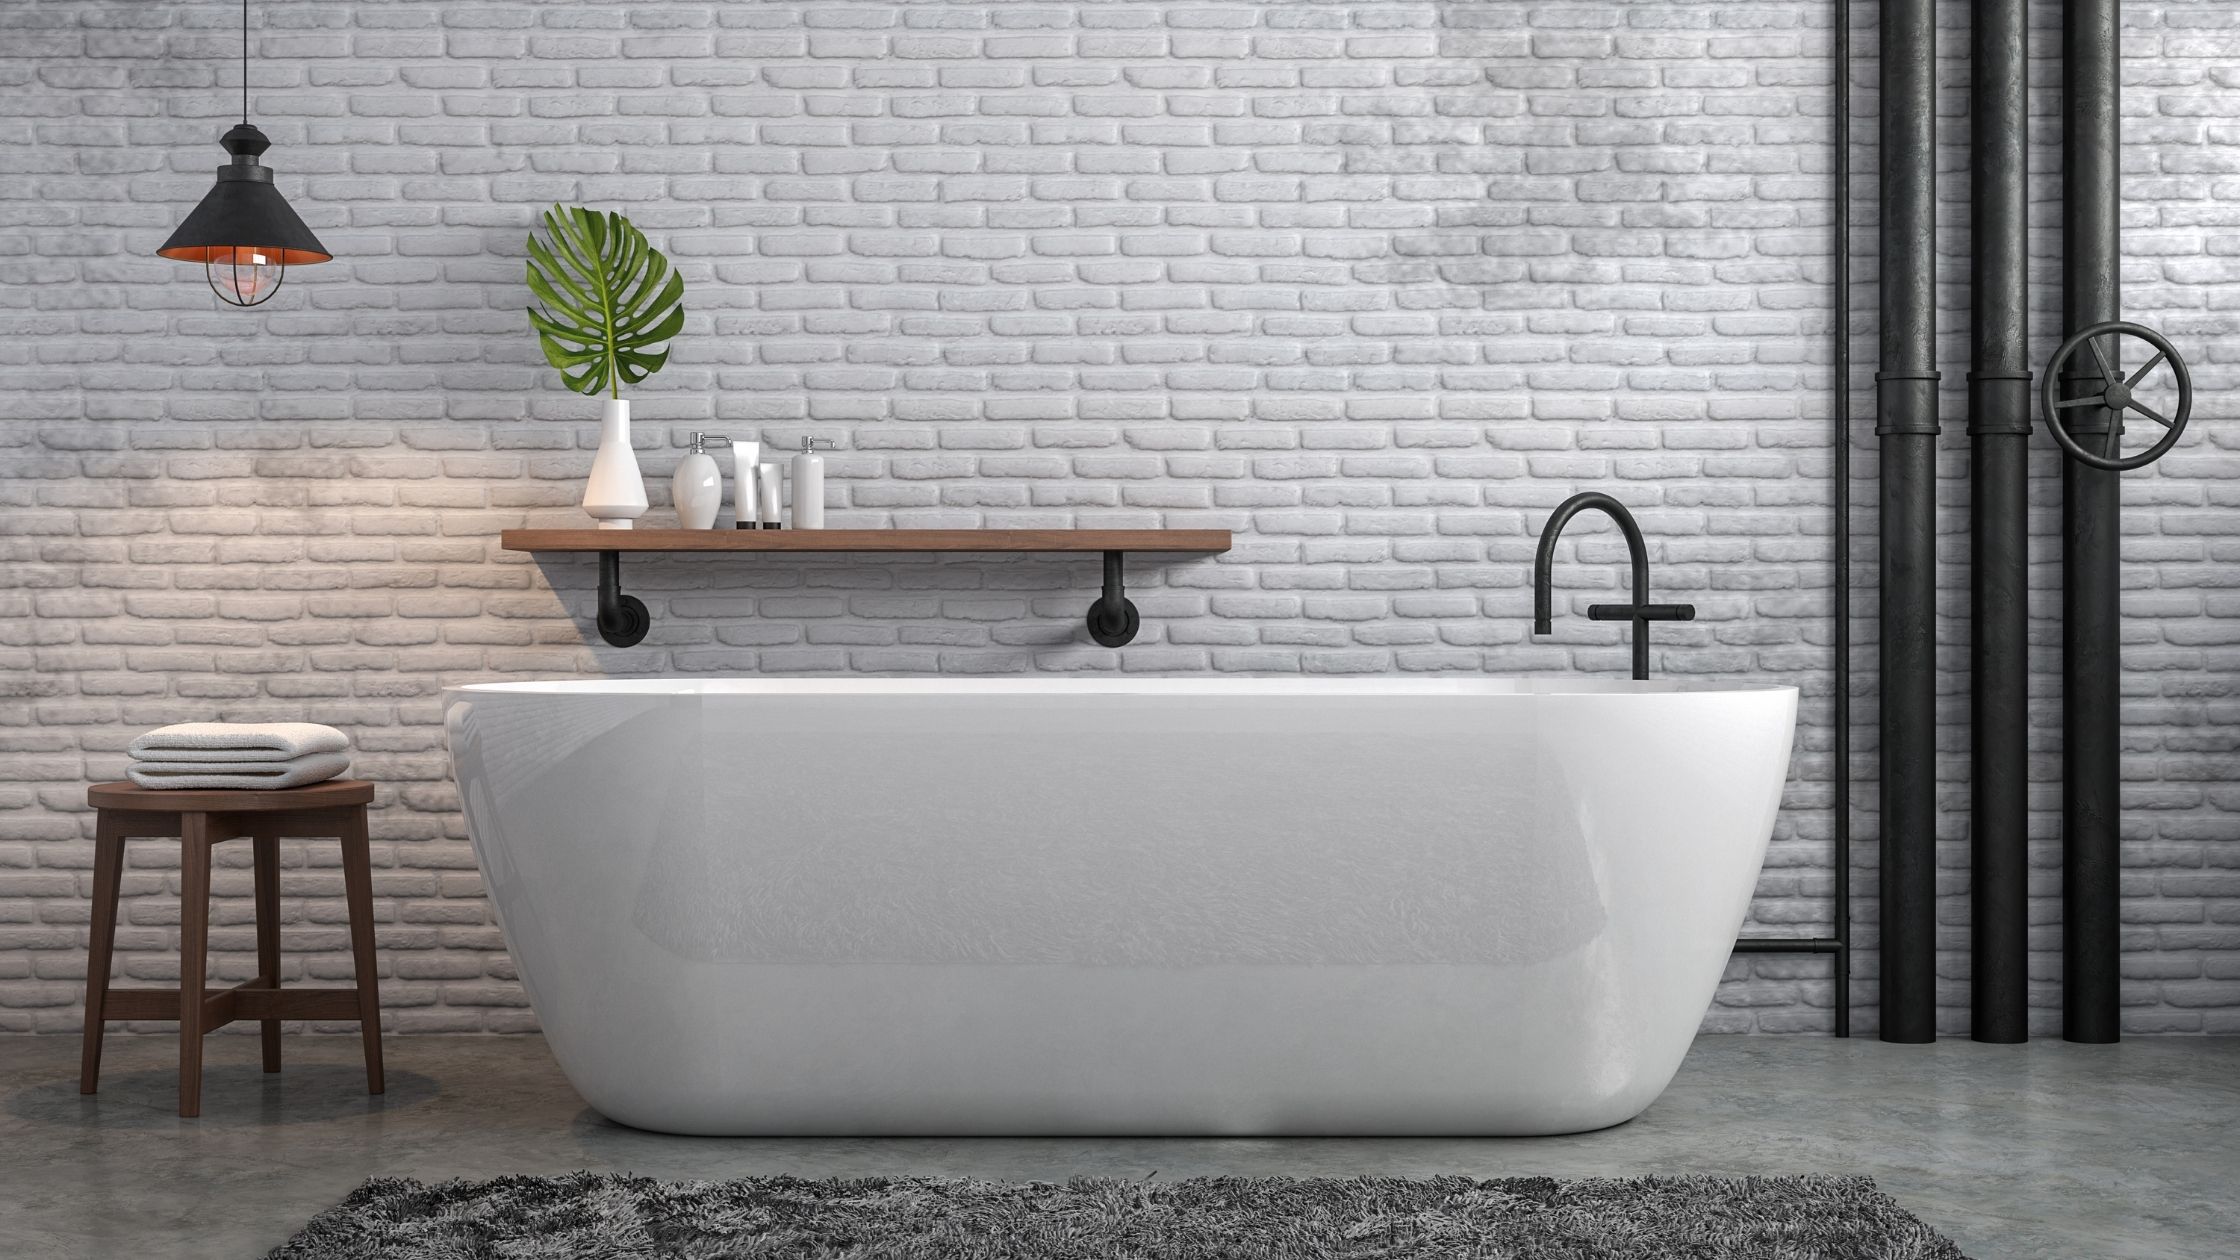 Idées salle de bain : 5 exemples pour vous inspirer - Blog Hydrao